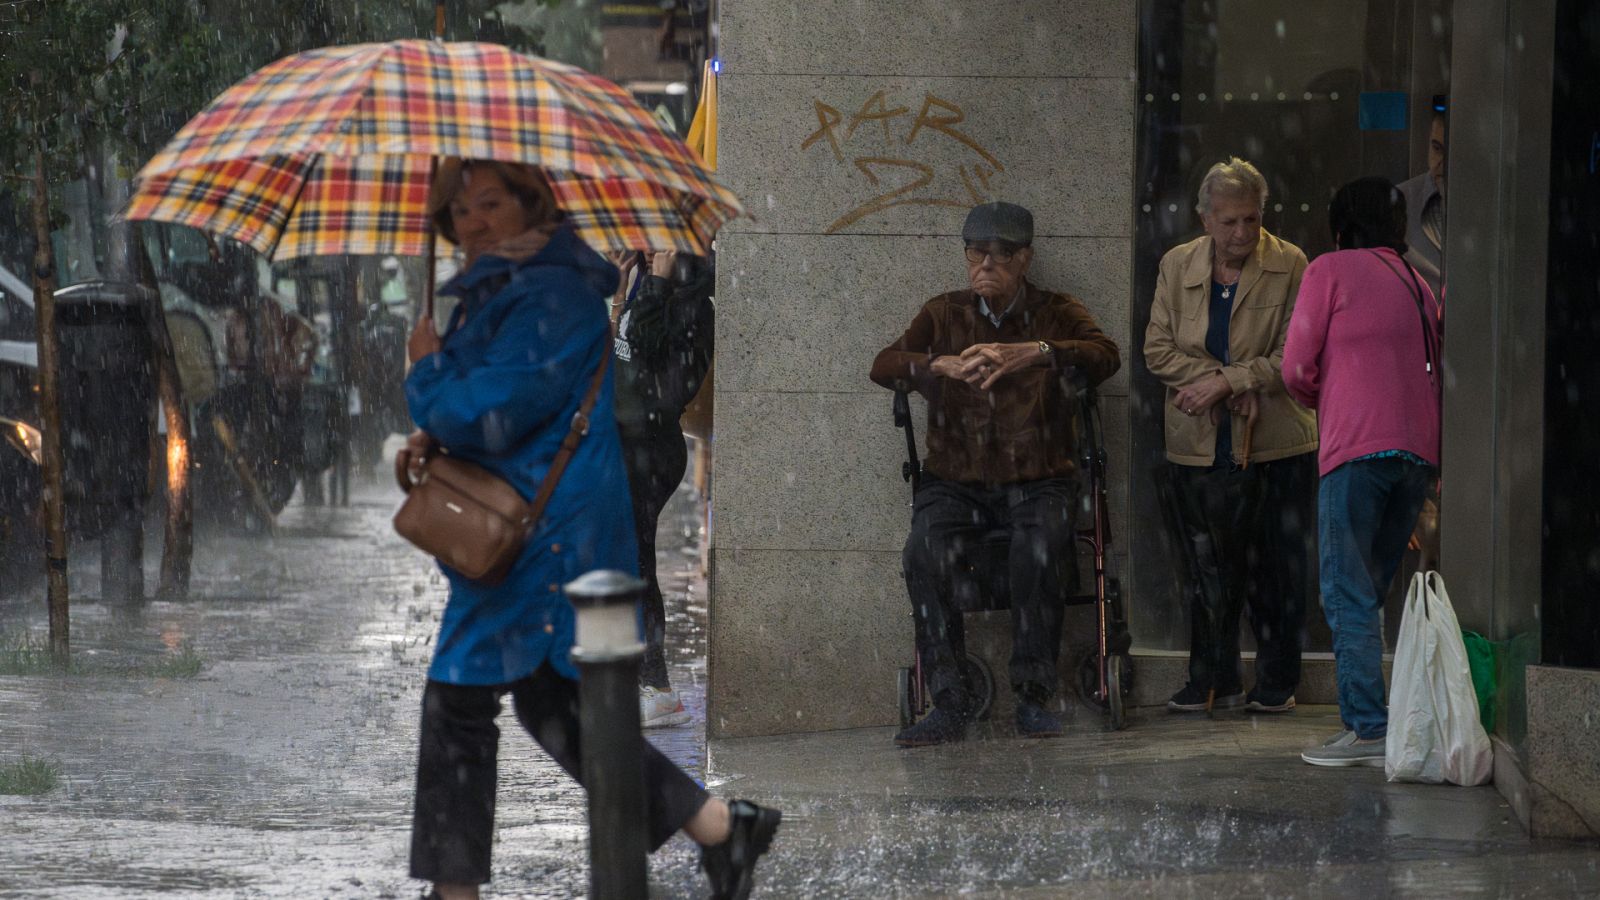 Una mujer se resguarda d ela lluvia con un paraguas.